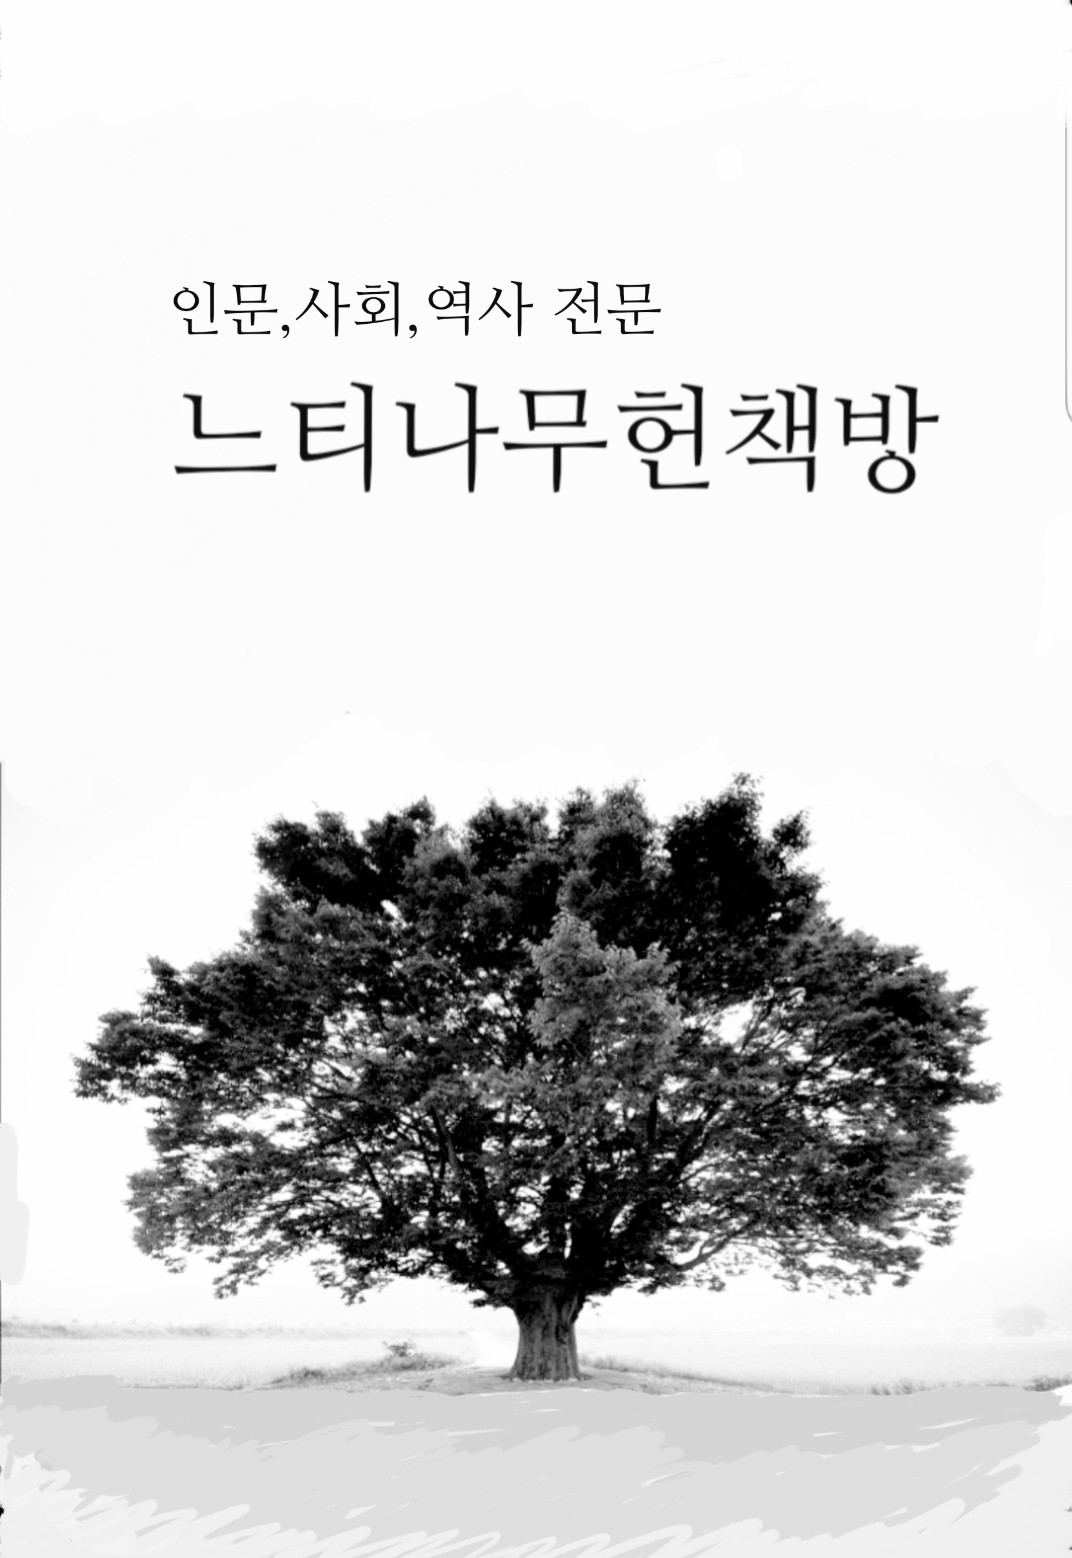 조선상식문답 - 삼성문화문고 16 (작8코너)